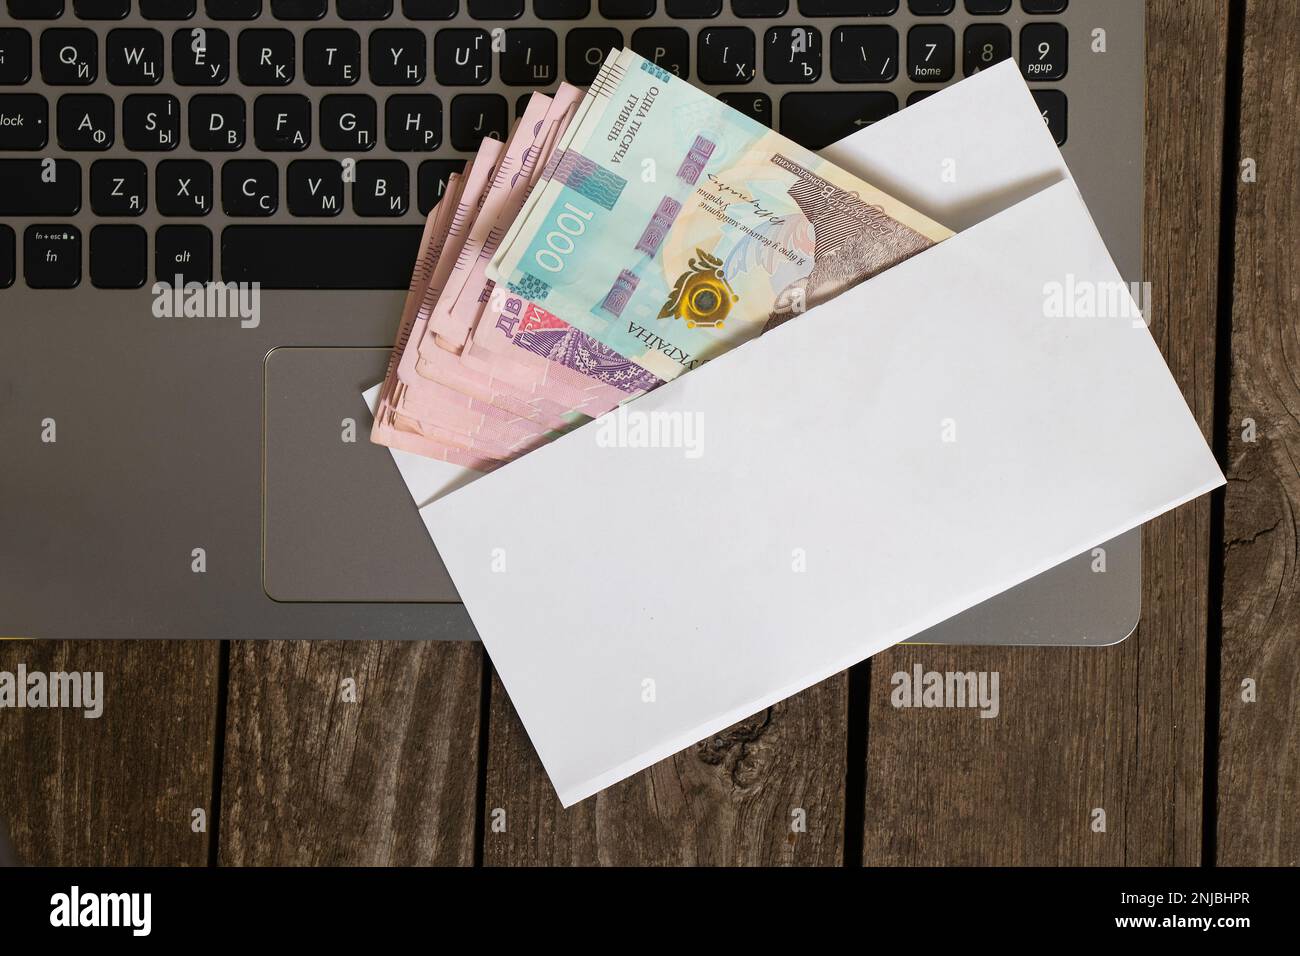 La monnaie ukrainienne se trouve dans une enveloppe blanche sur un ordinateur portable sur une enveloppe en bois, le salaire dans une enveloppe Banque D'Images